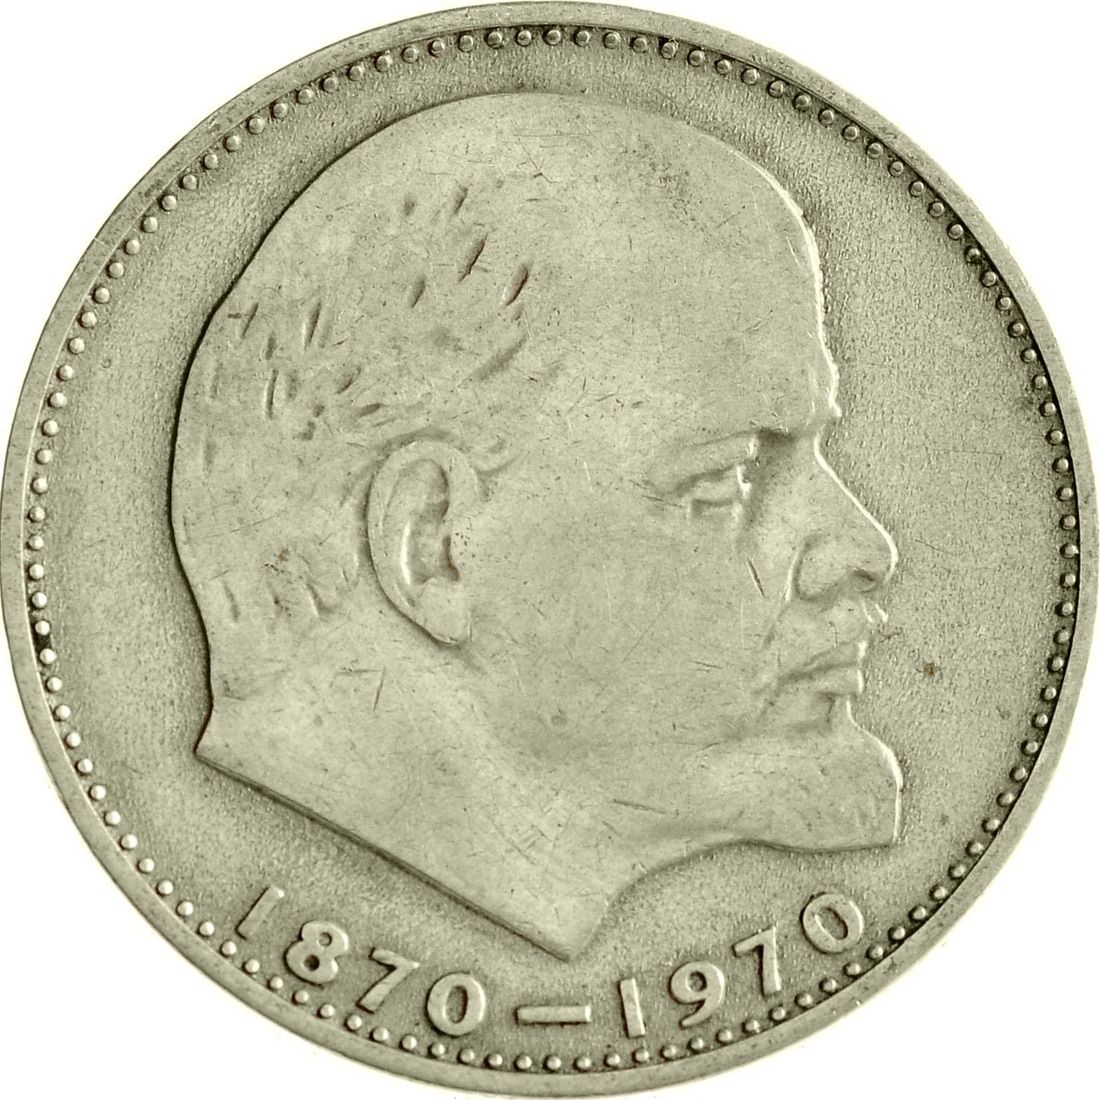 Купить монета СССР 1 рубль 1970 года 100 лет со дня рождения В.И. Ленина, CashFlow Store, цены на Мегамаркет | Артикул: 600009420435